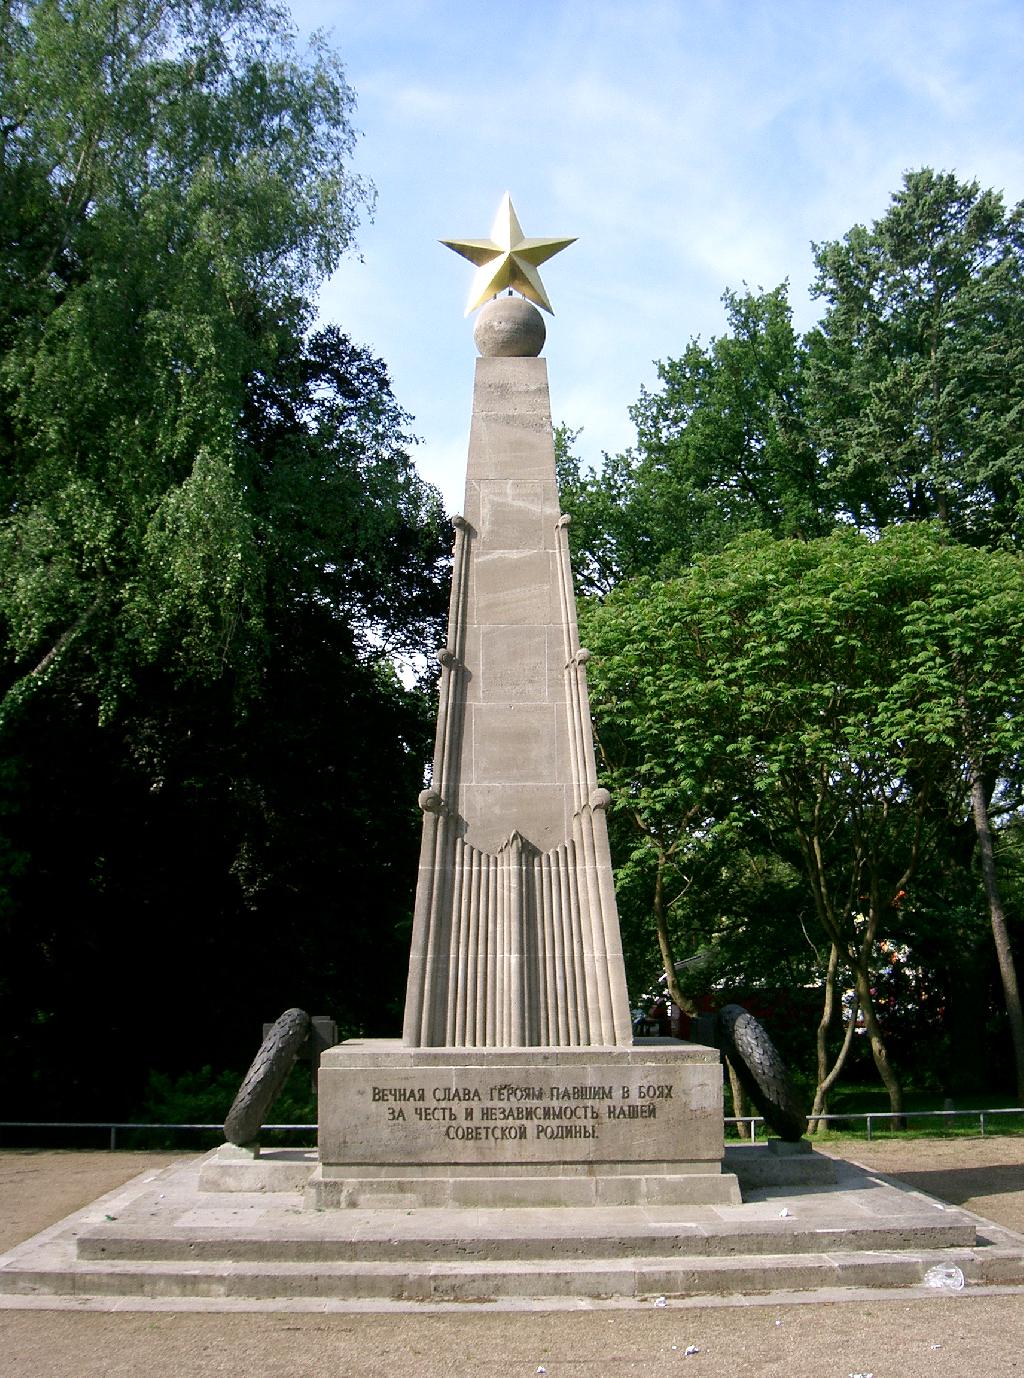 Ehrenfriedhof für Gefallene der Roten Armee (Bernau bei Berlin) in Bernau